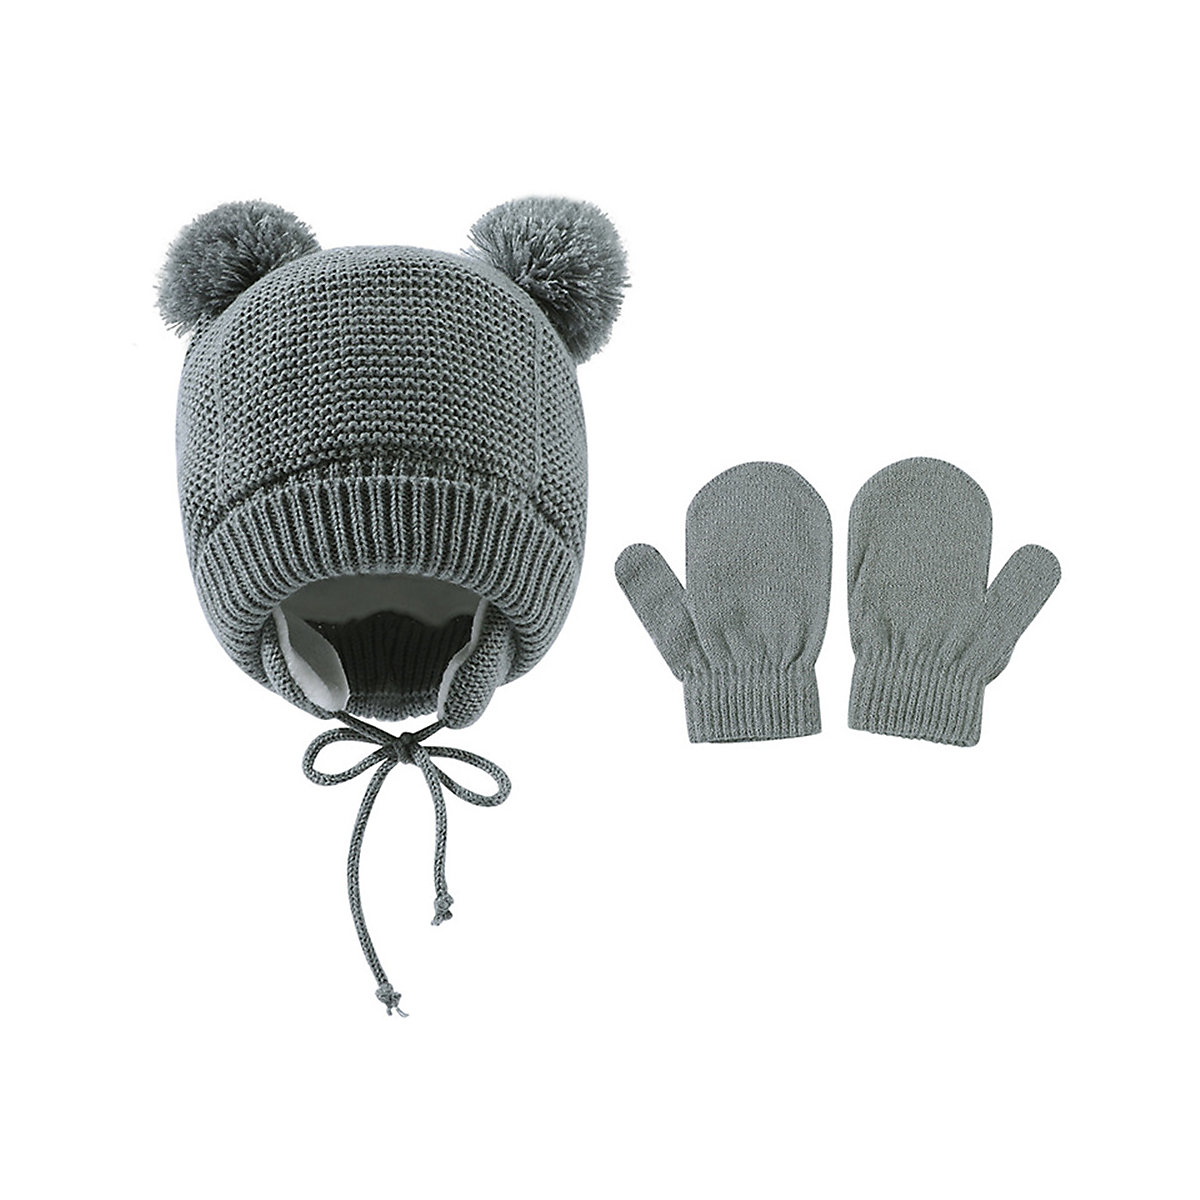 Vicabo Winter Mütze und Handschuhe Set Winter Strickmütze Mützen für Kinder grau